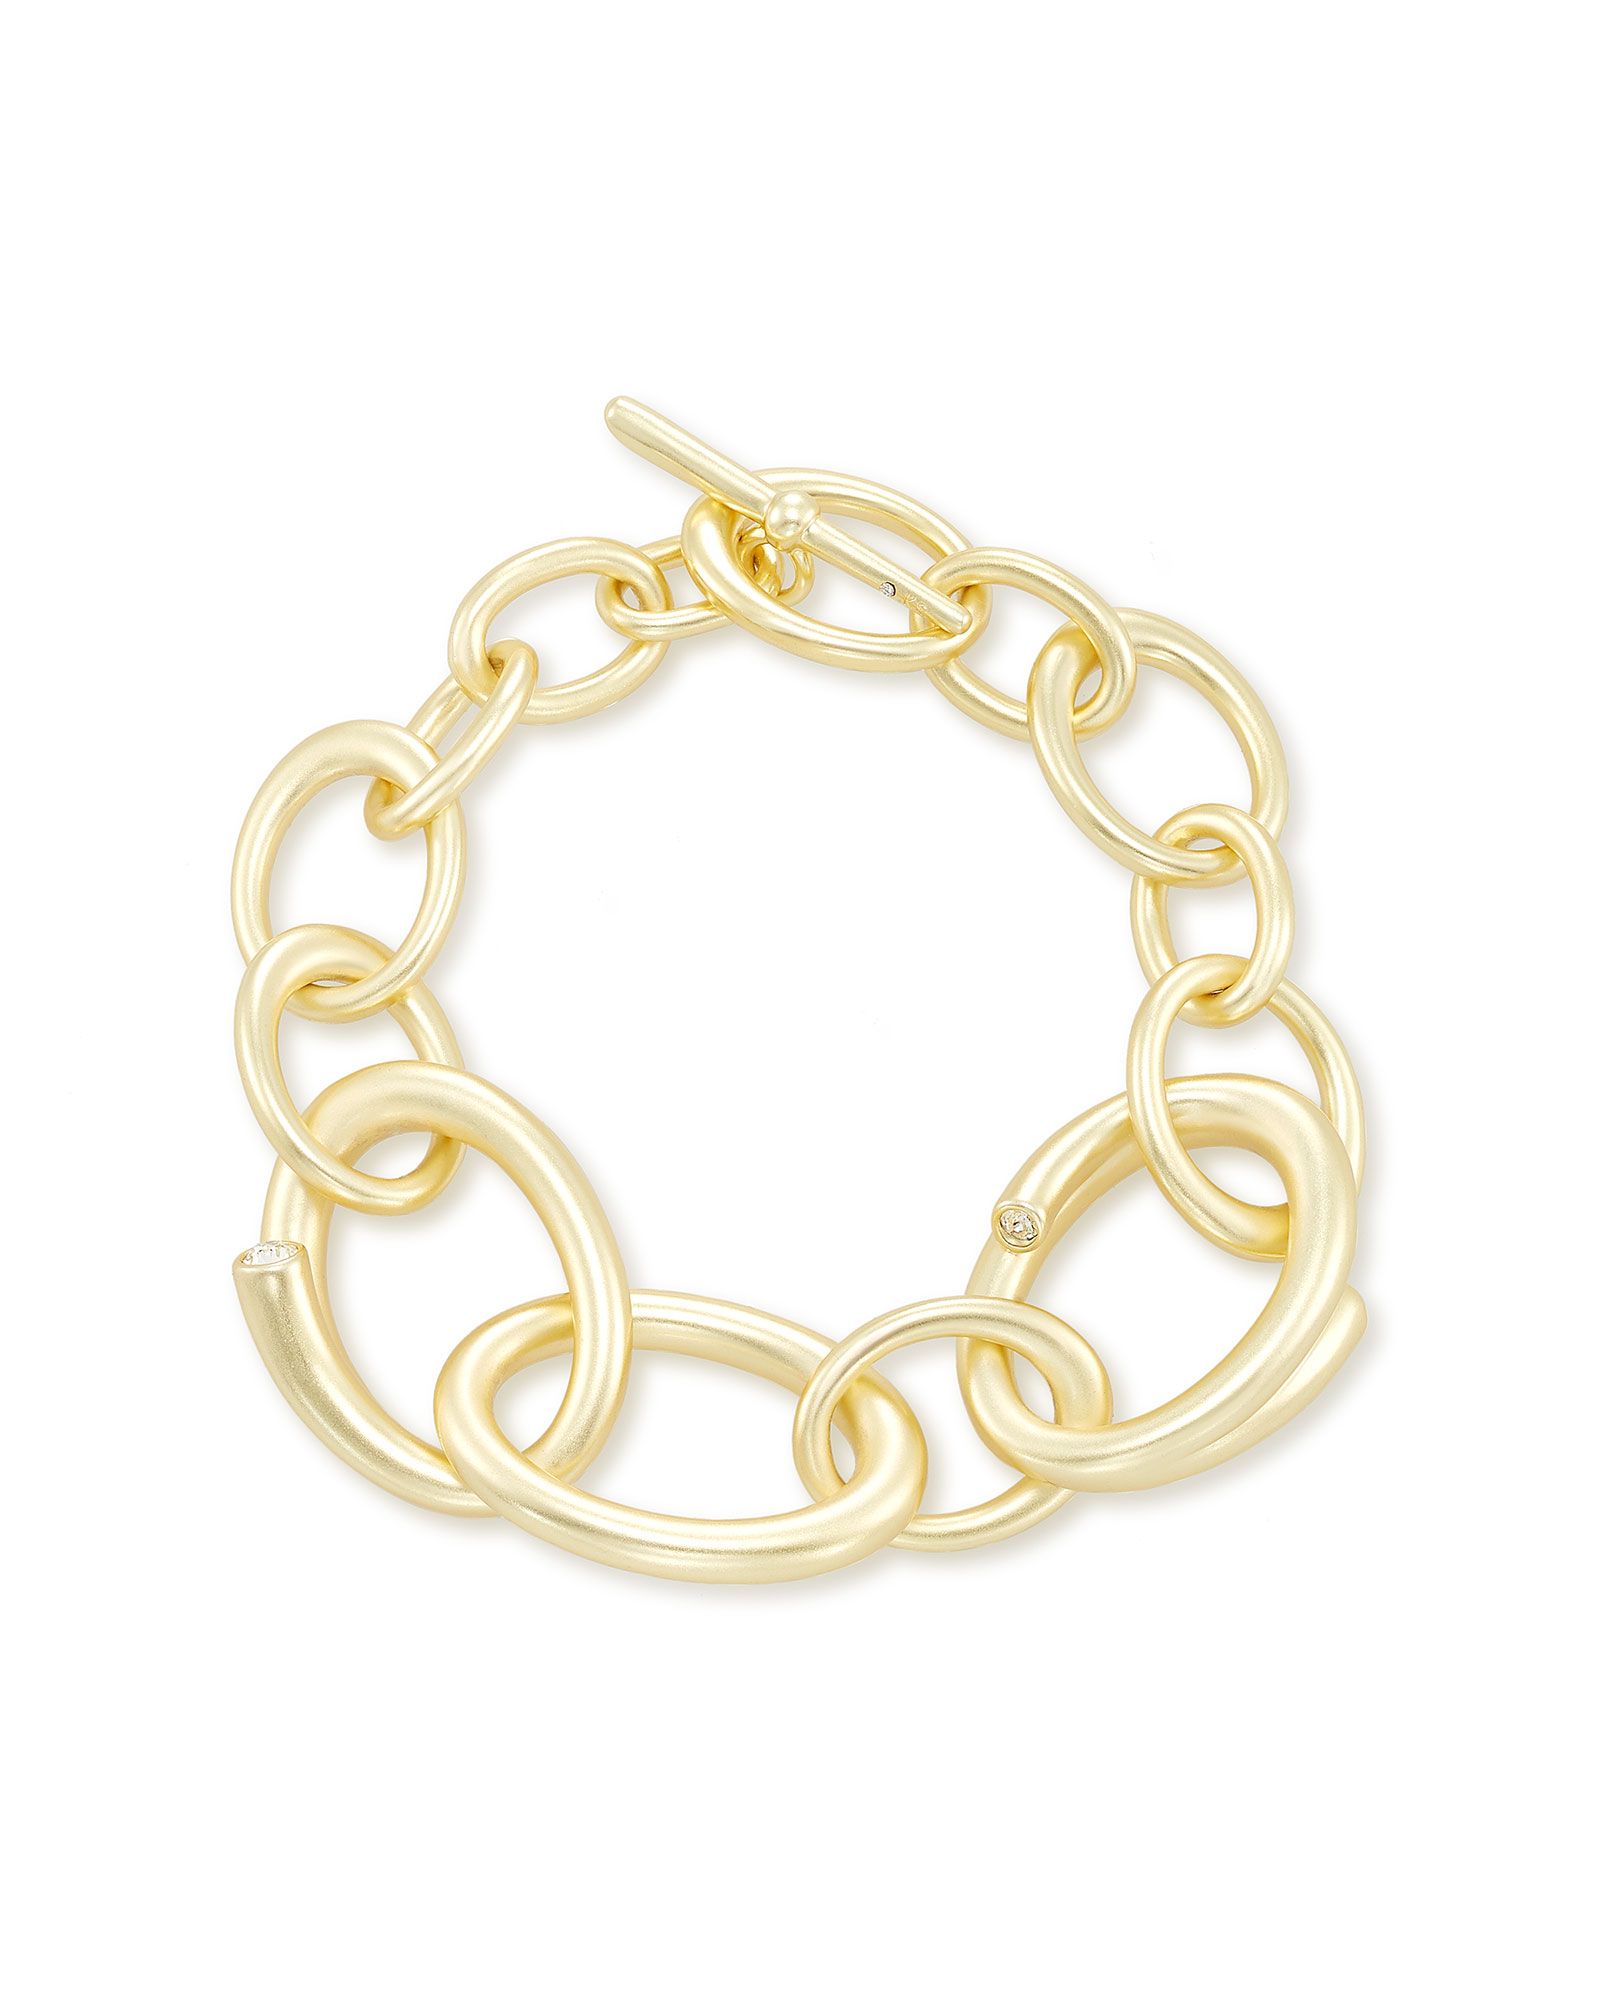 Walker Link Bracelet in Gold | Kendra Scott